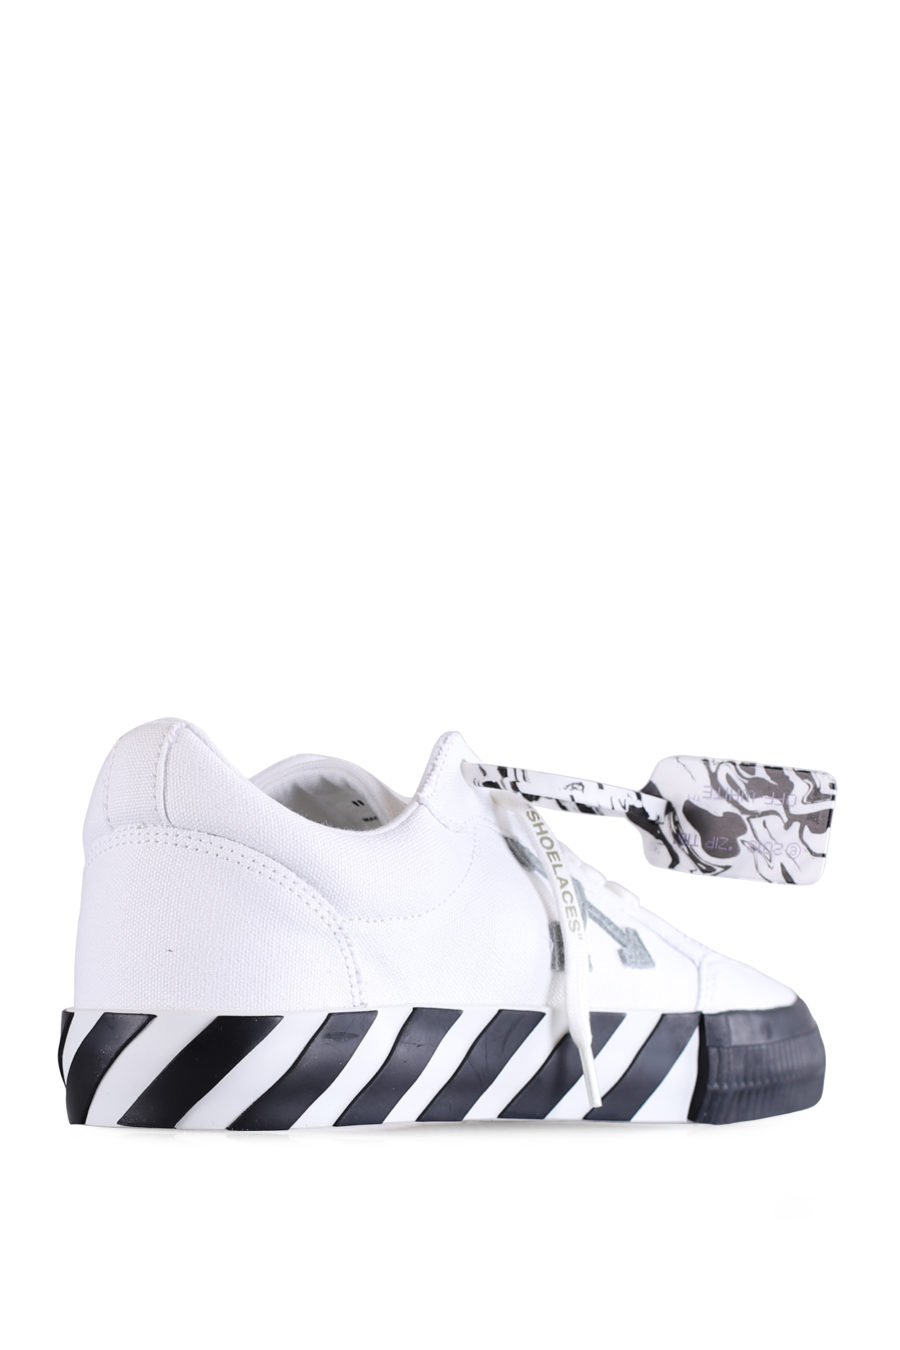 Zapatillas bajas "Vulcanized" de color blanco - IMG 0653